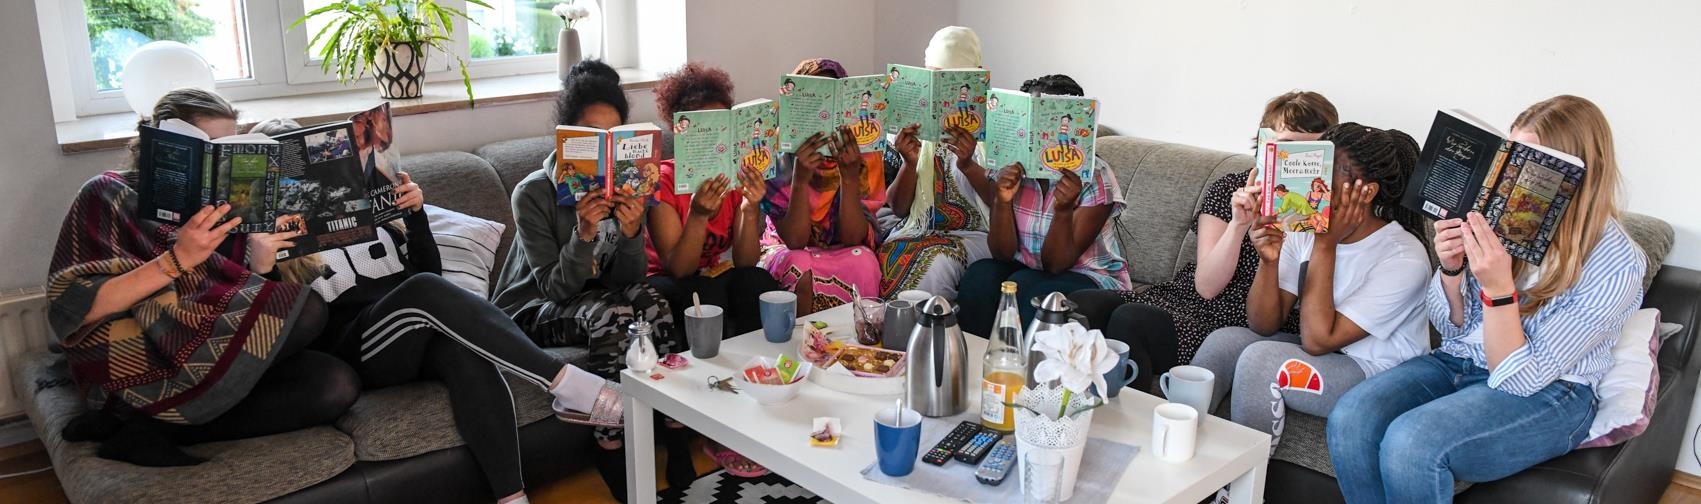 Fünf geflüchtete Mädchen halten sich Lesebücher vor ihre Gesichter